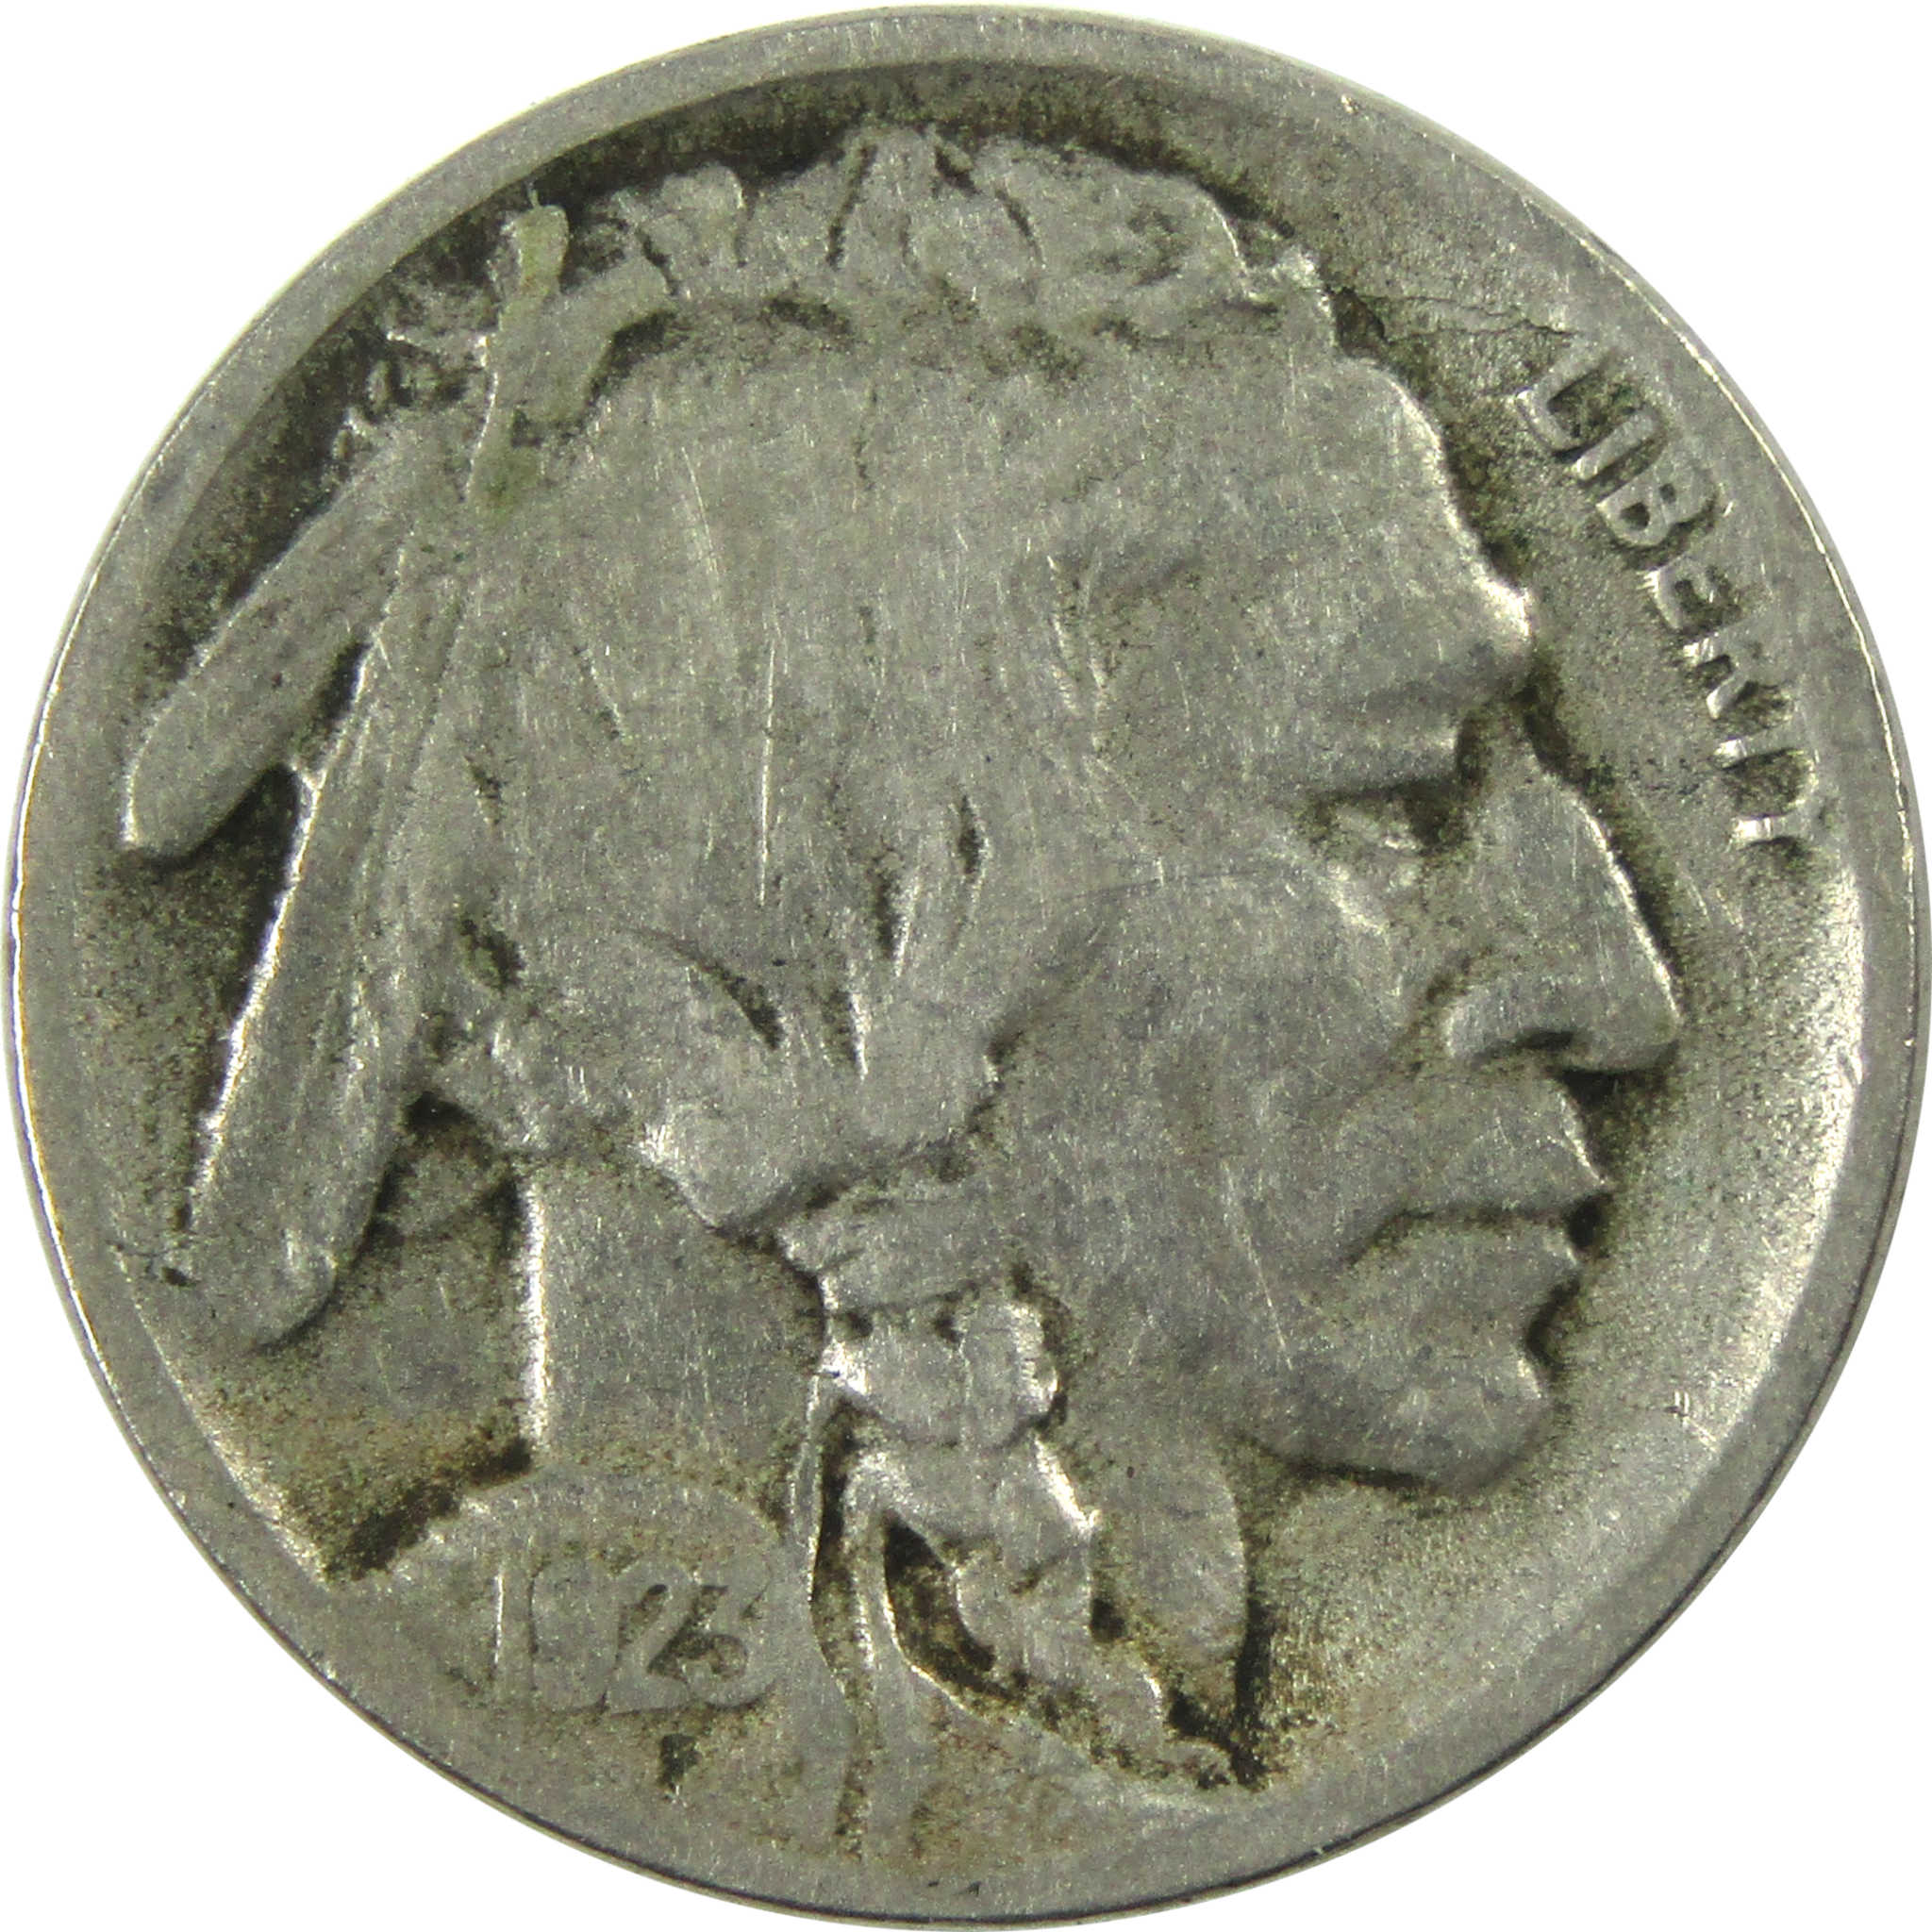 1923 S Indian Head Buffalo Nickel F Fine 5c Coin SKU:I13286